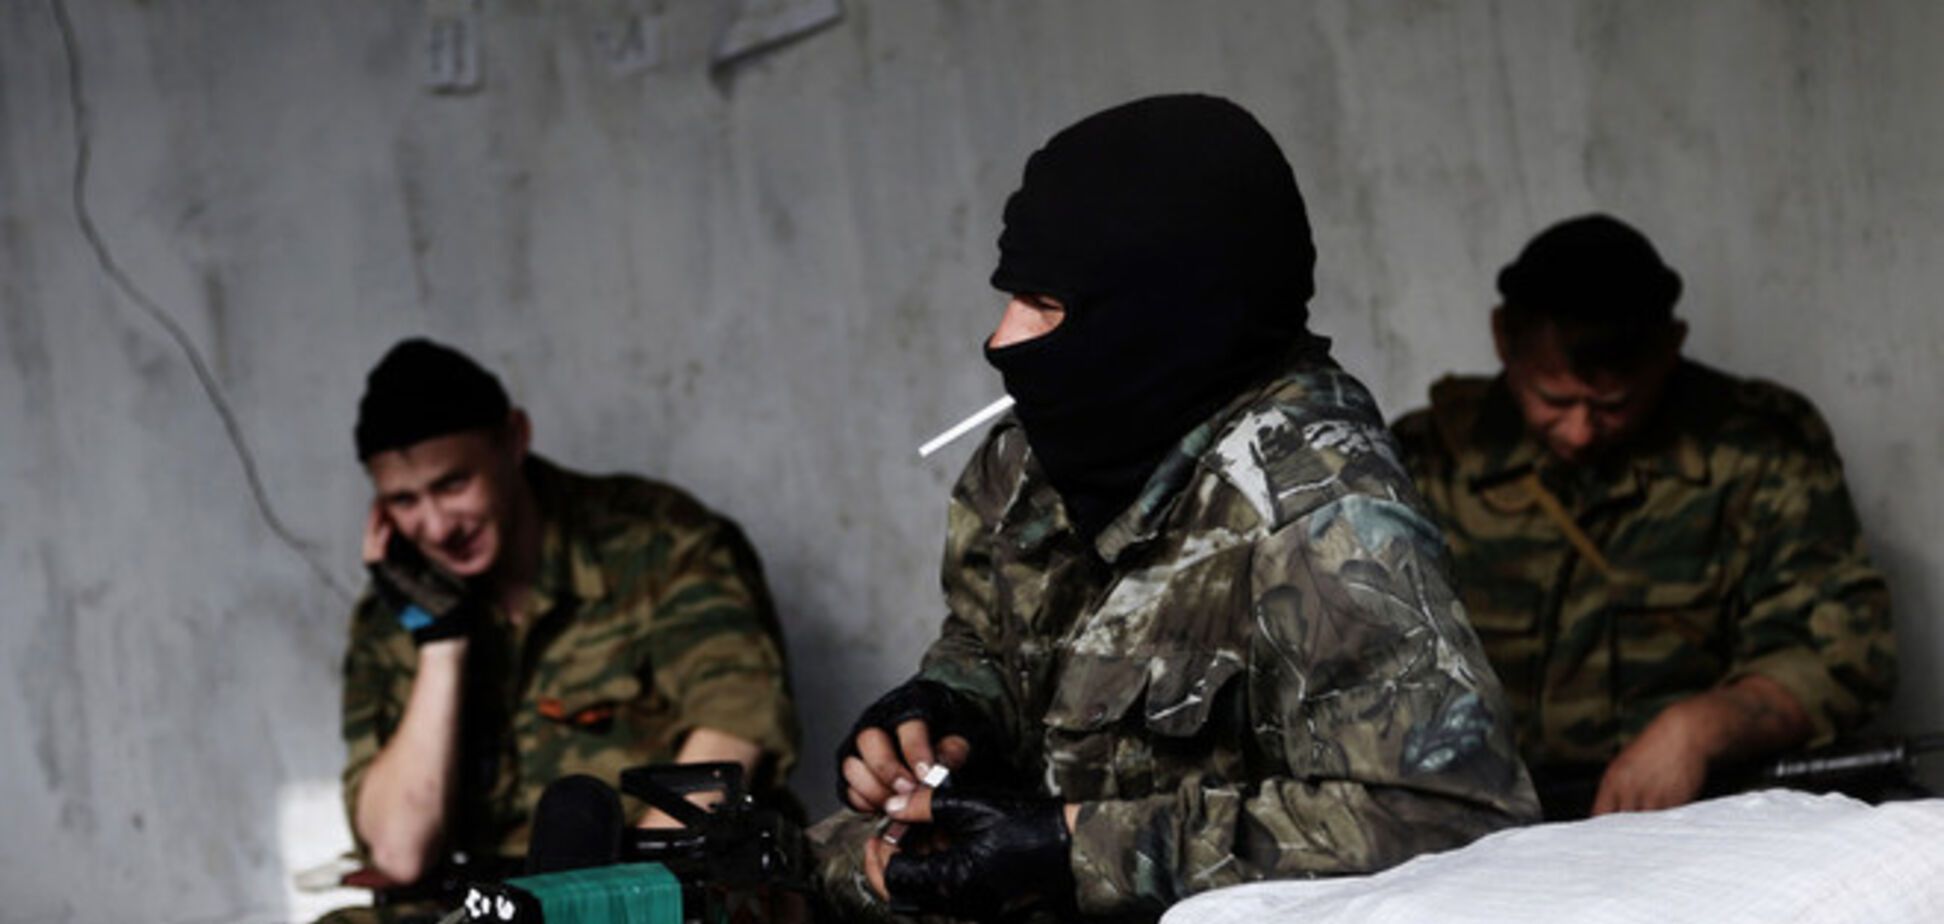 Європейські ЗМІ повідомляють про перехід конфлікту на Донбасі в небезпечну фазу